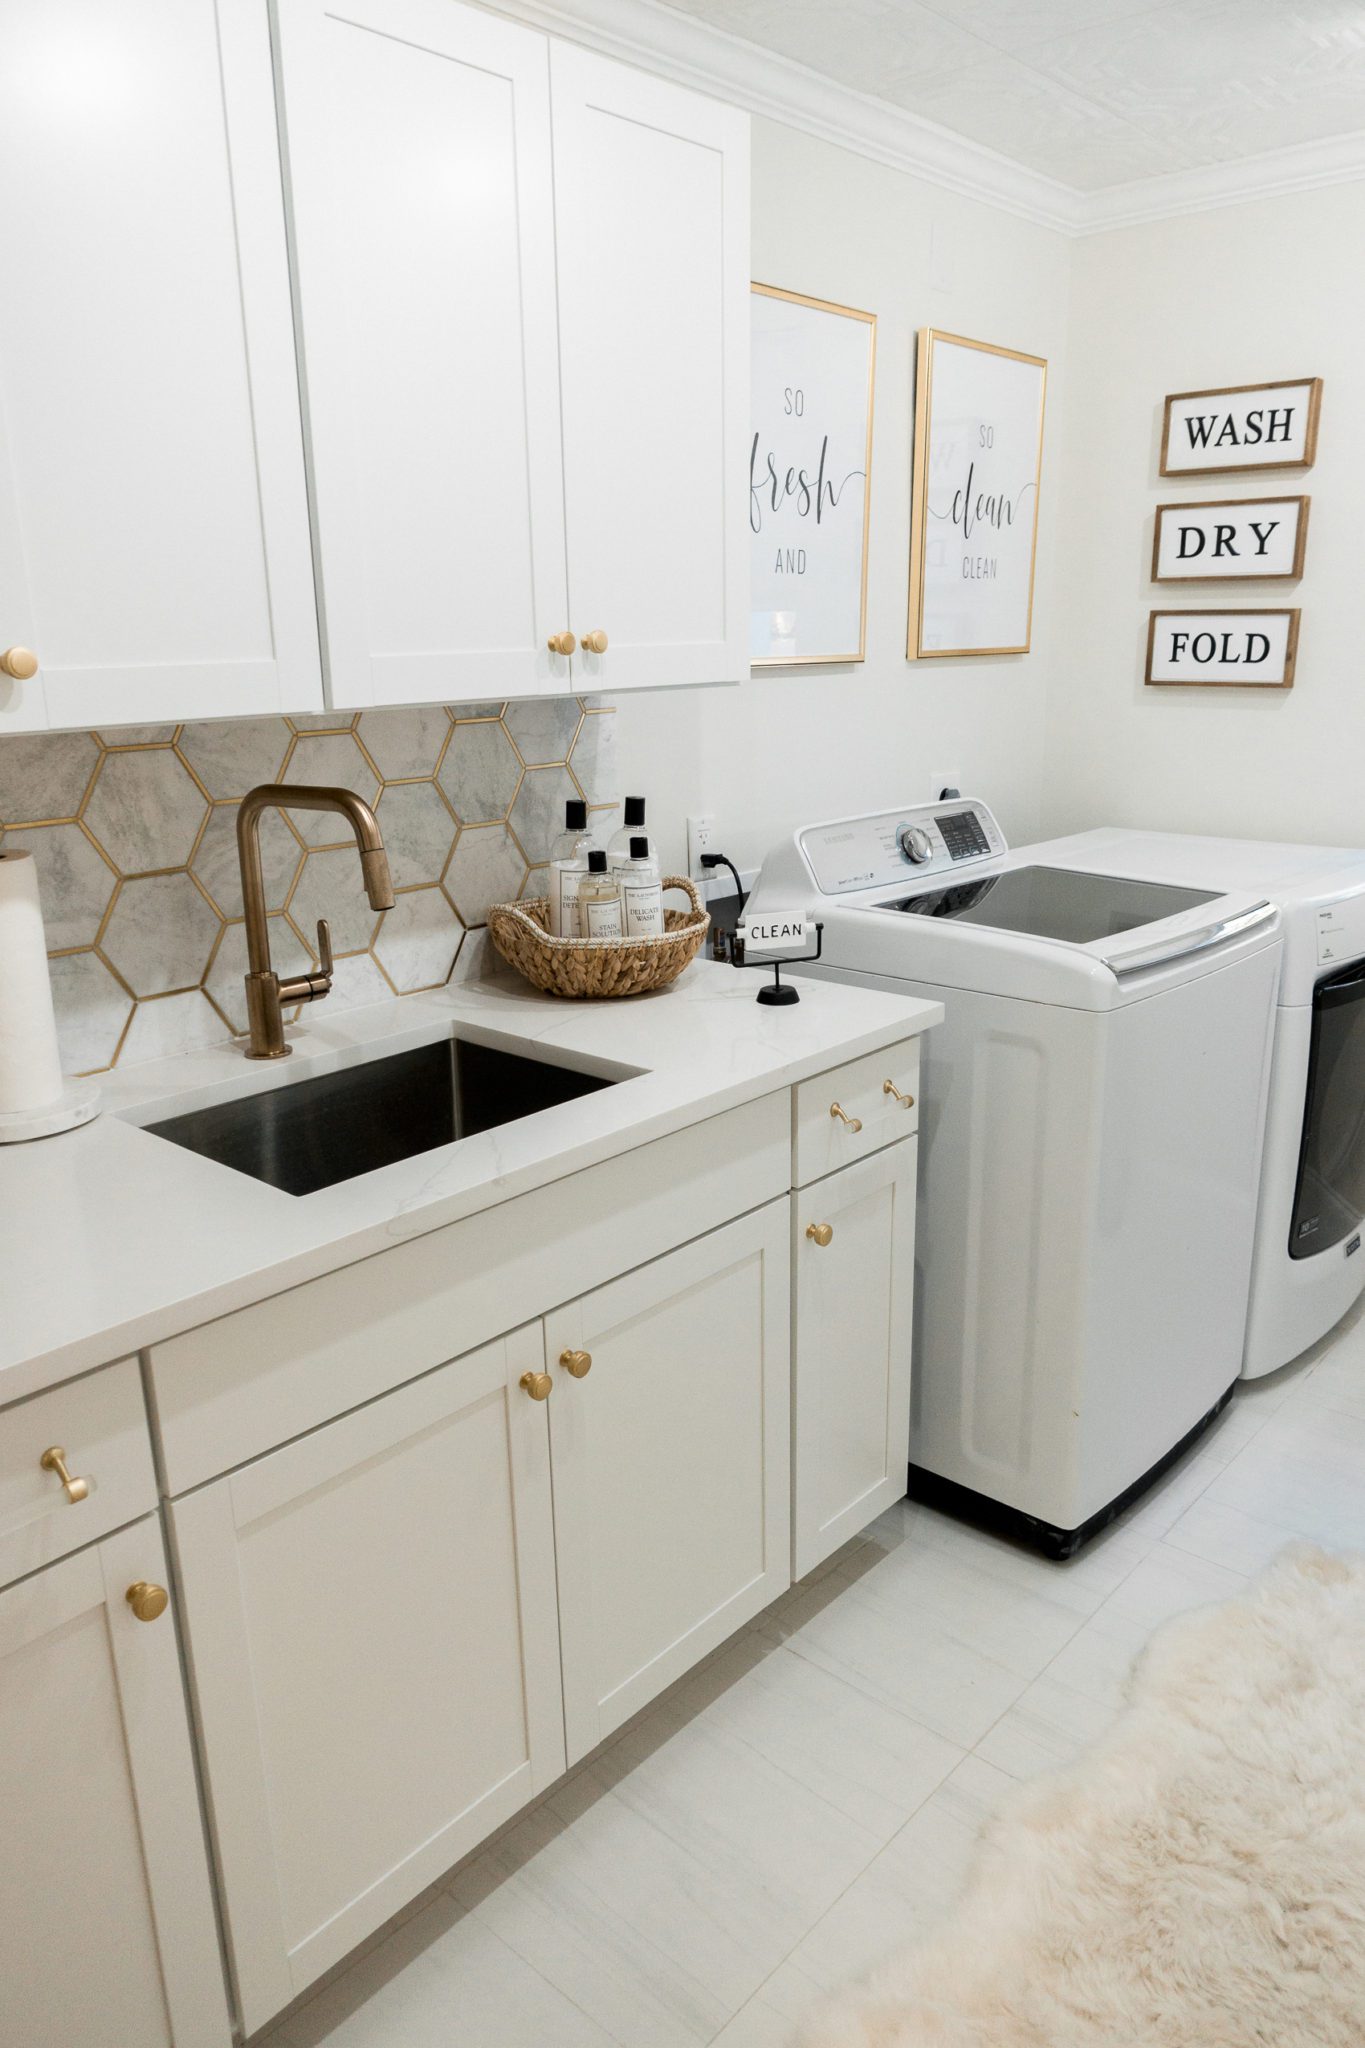 https://www.aglamlifestyle.com/wp-content/uploads/2021/01/laundry-room-decor-ideas-washer-and-dryer-aglamlifestyle-3-scaled.jpg